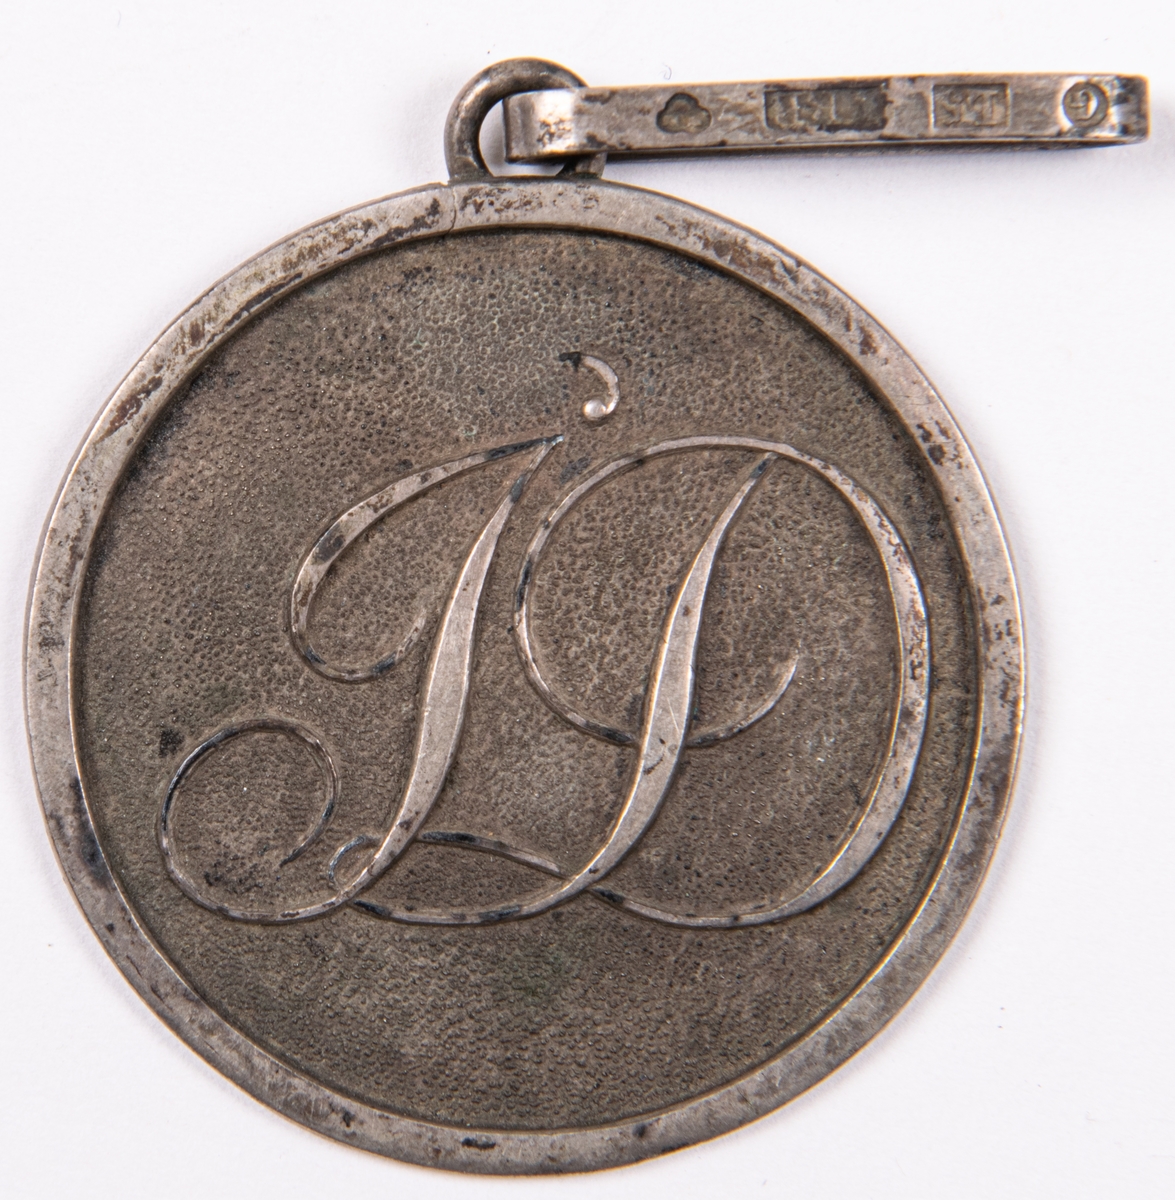 Emblem för föreningen Idka Dygden. Rund form med hänge.
Del av 6 stycken föreningestecken i silver, två korsformiga, 4 runda.